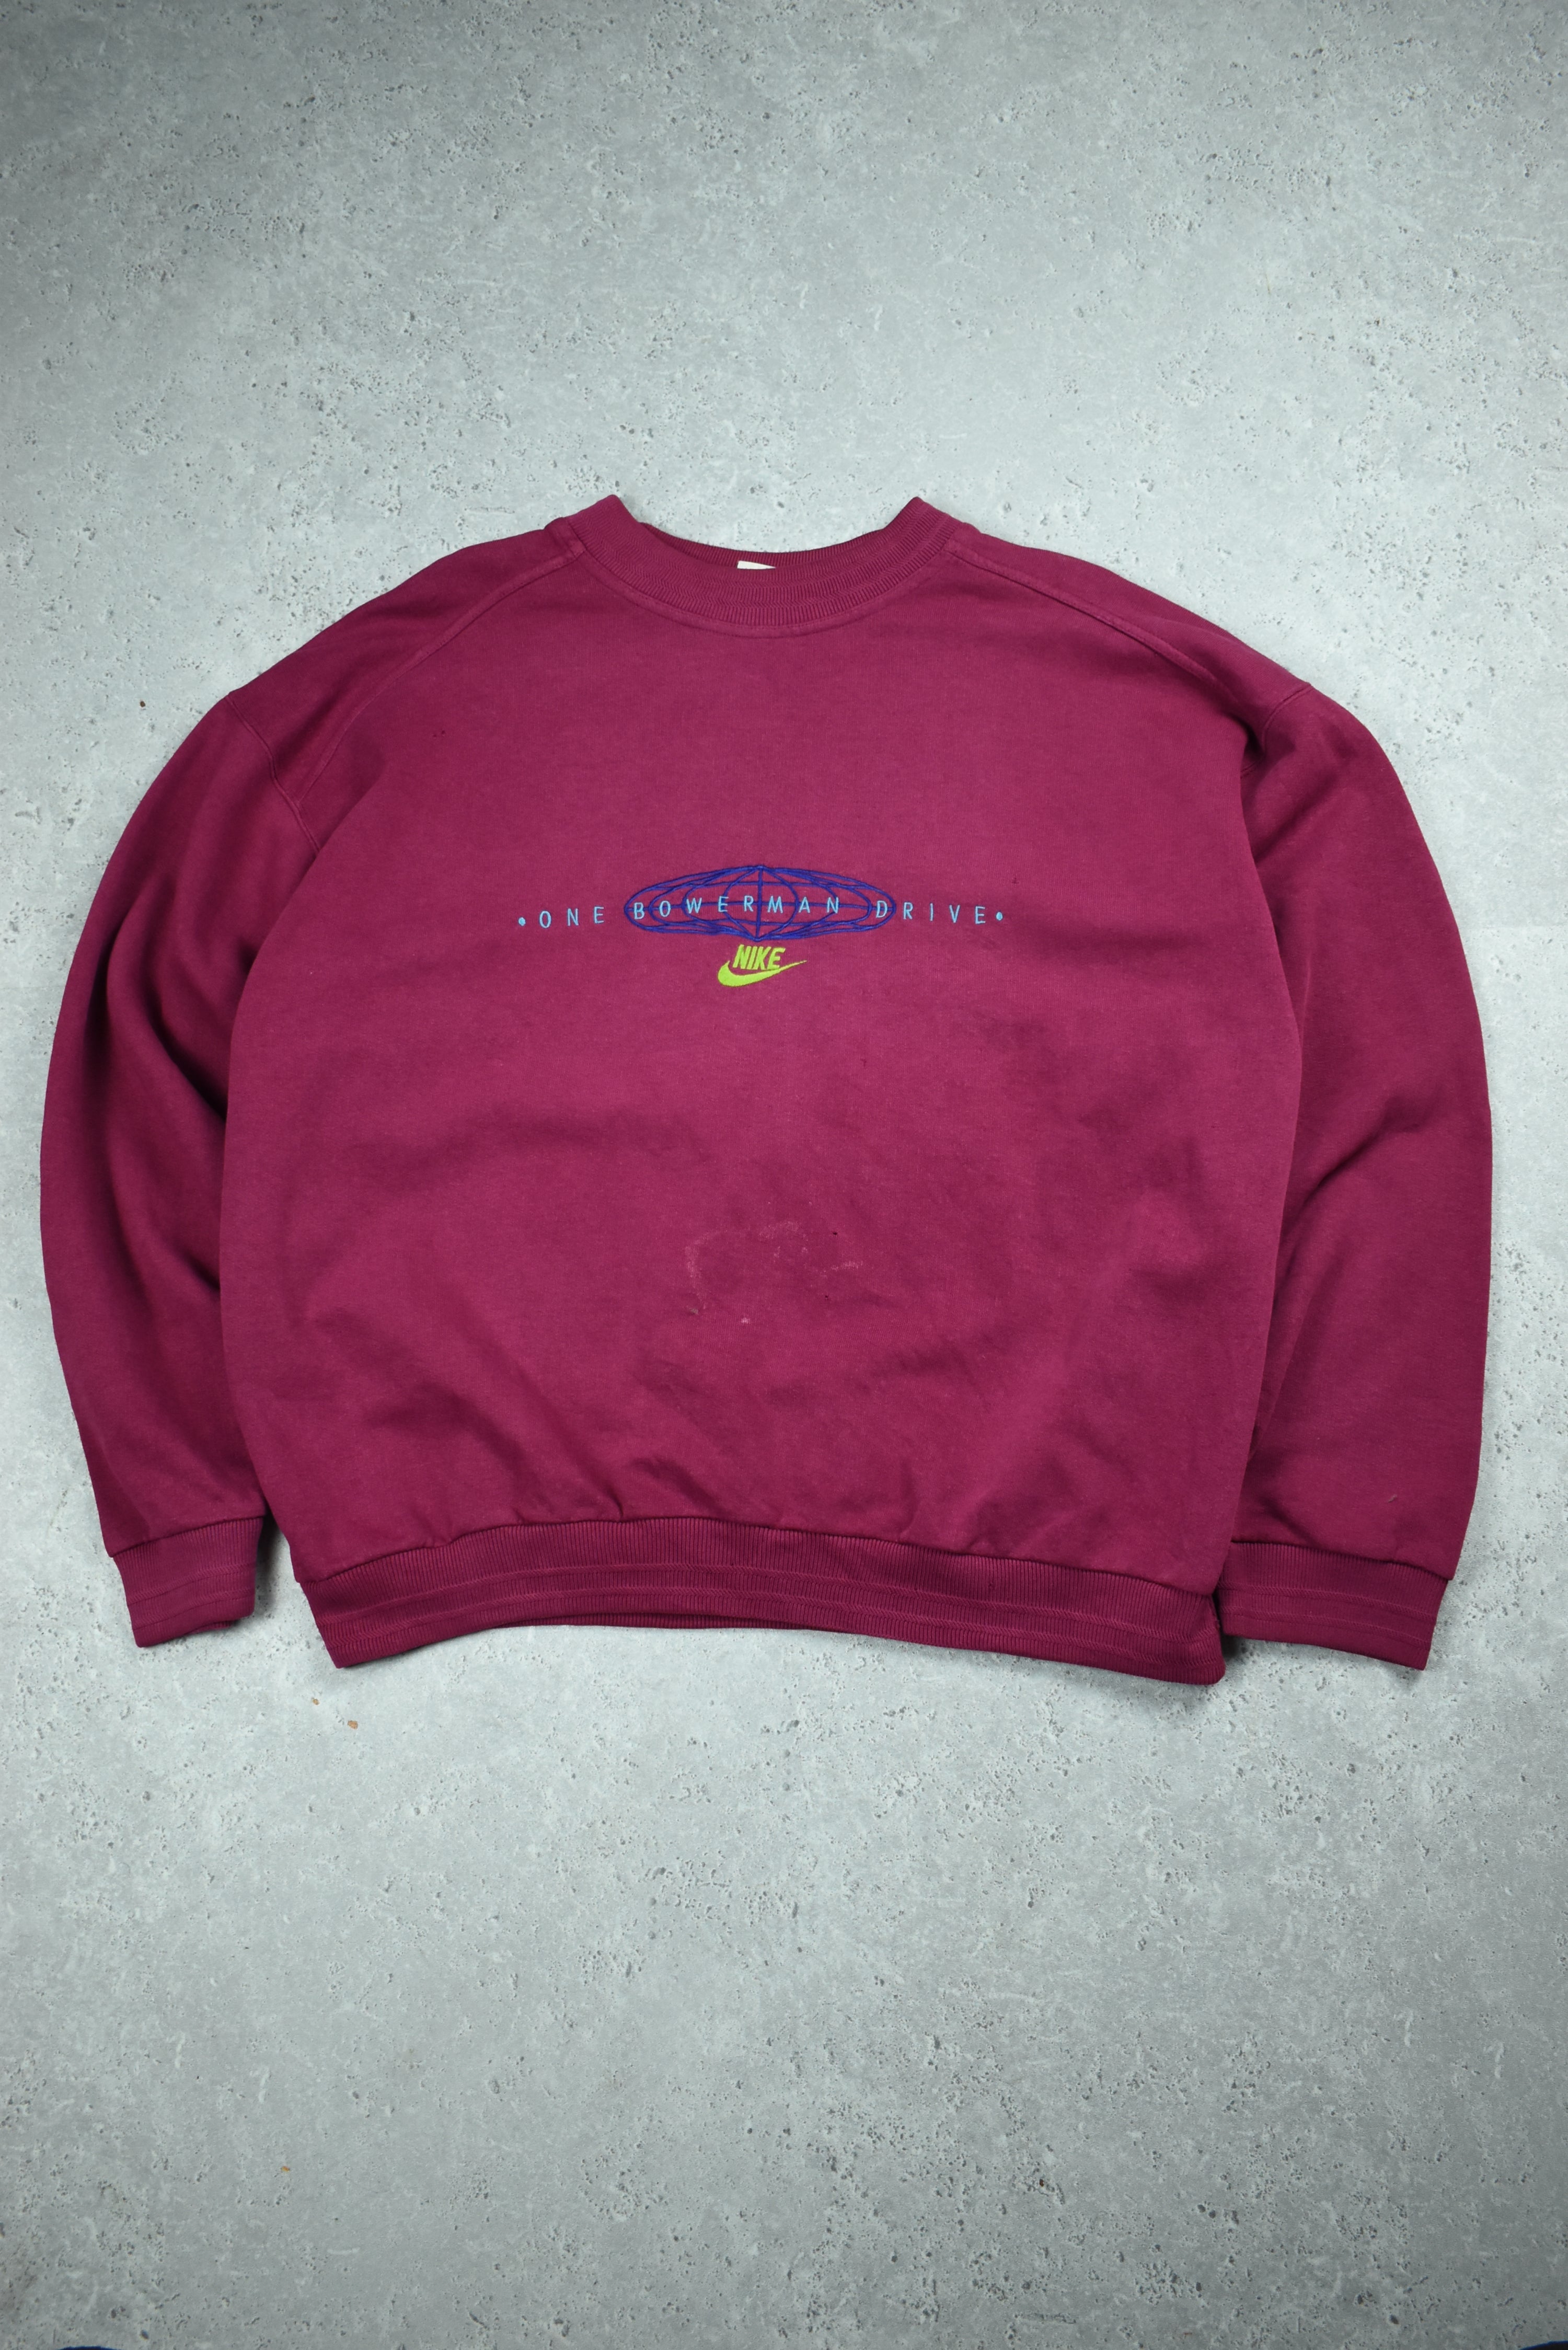 Vintage Rare Nike Bowerman Embroidered Sweatshirt Medium | Vintage Clothing